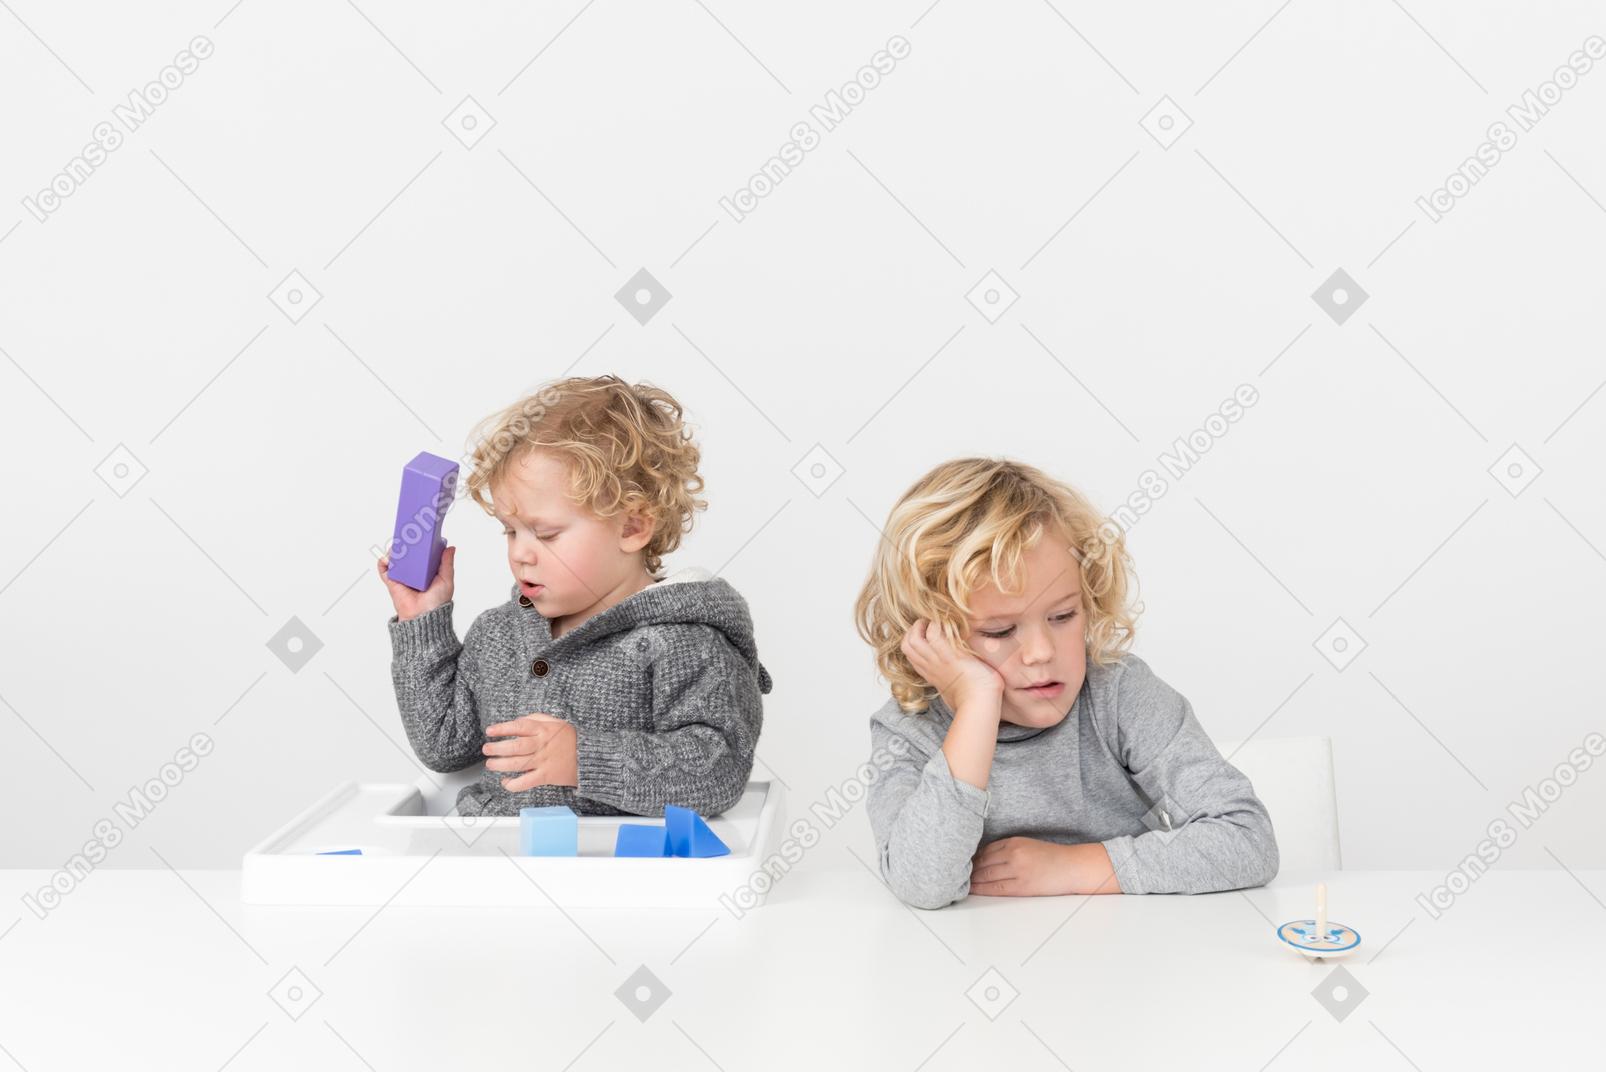 Menino brincando com cubos e seu irmão olhar entediado